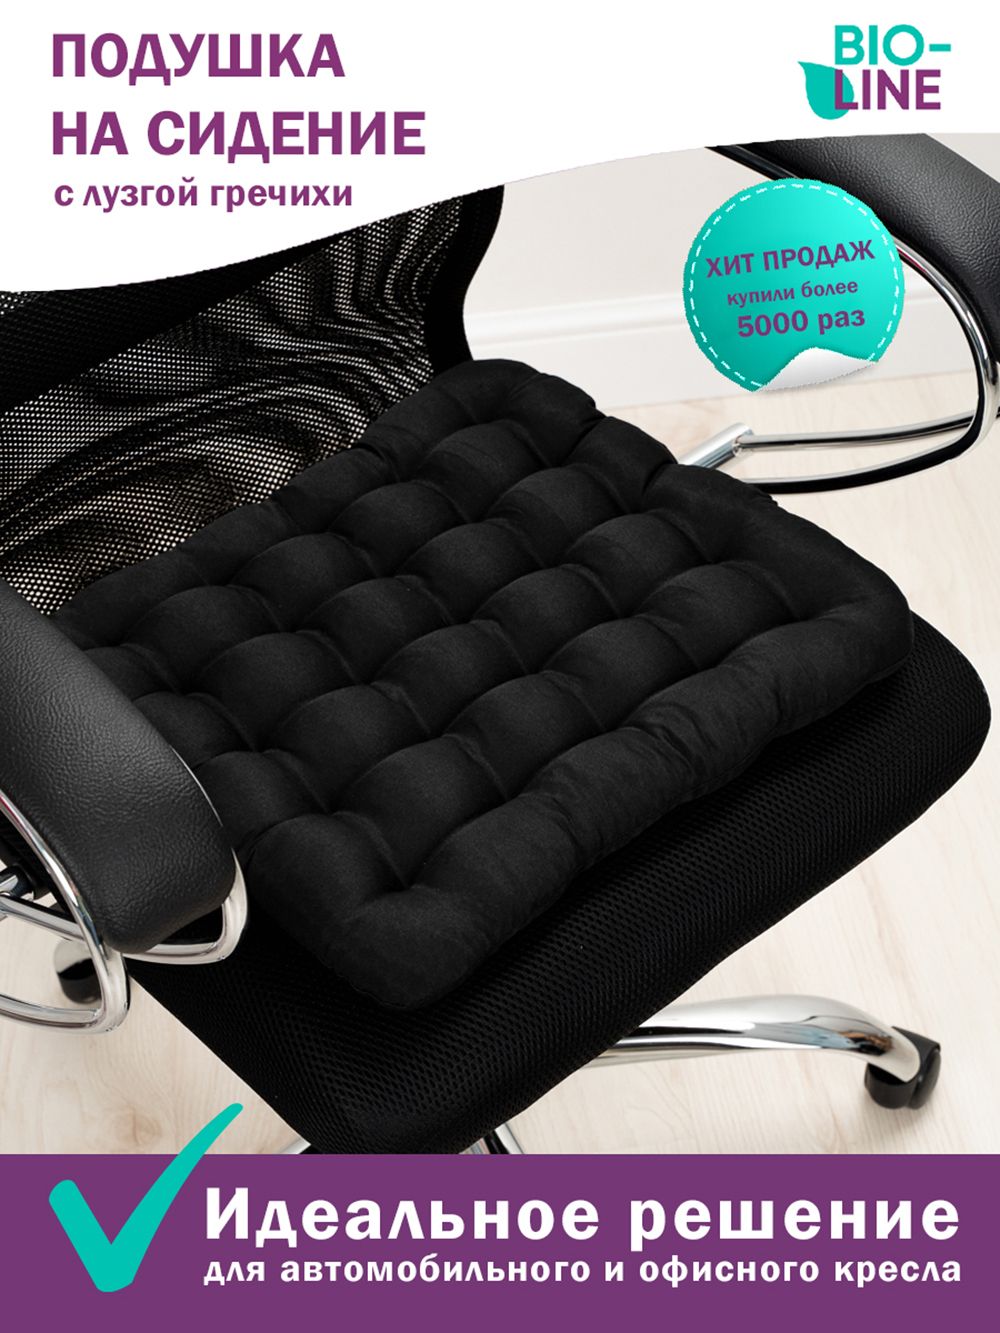 Подушка на стул Bio-Line с гречневой лузгой PSG25 - черный